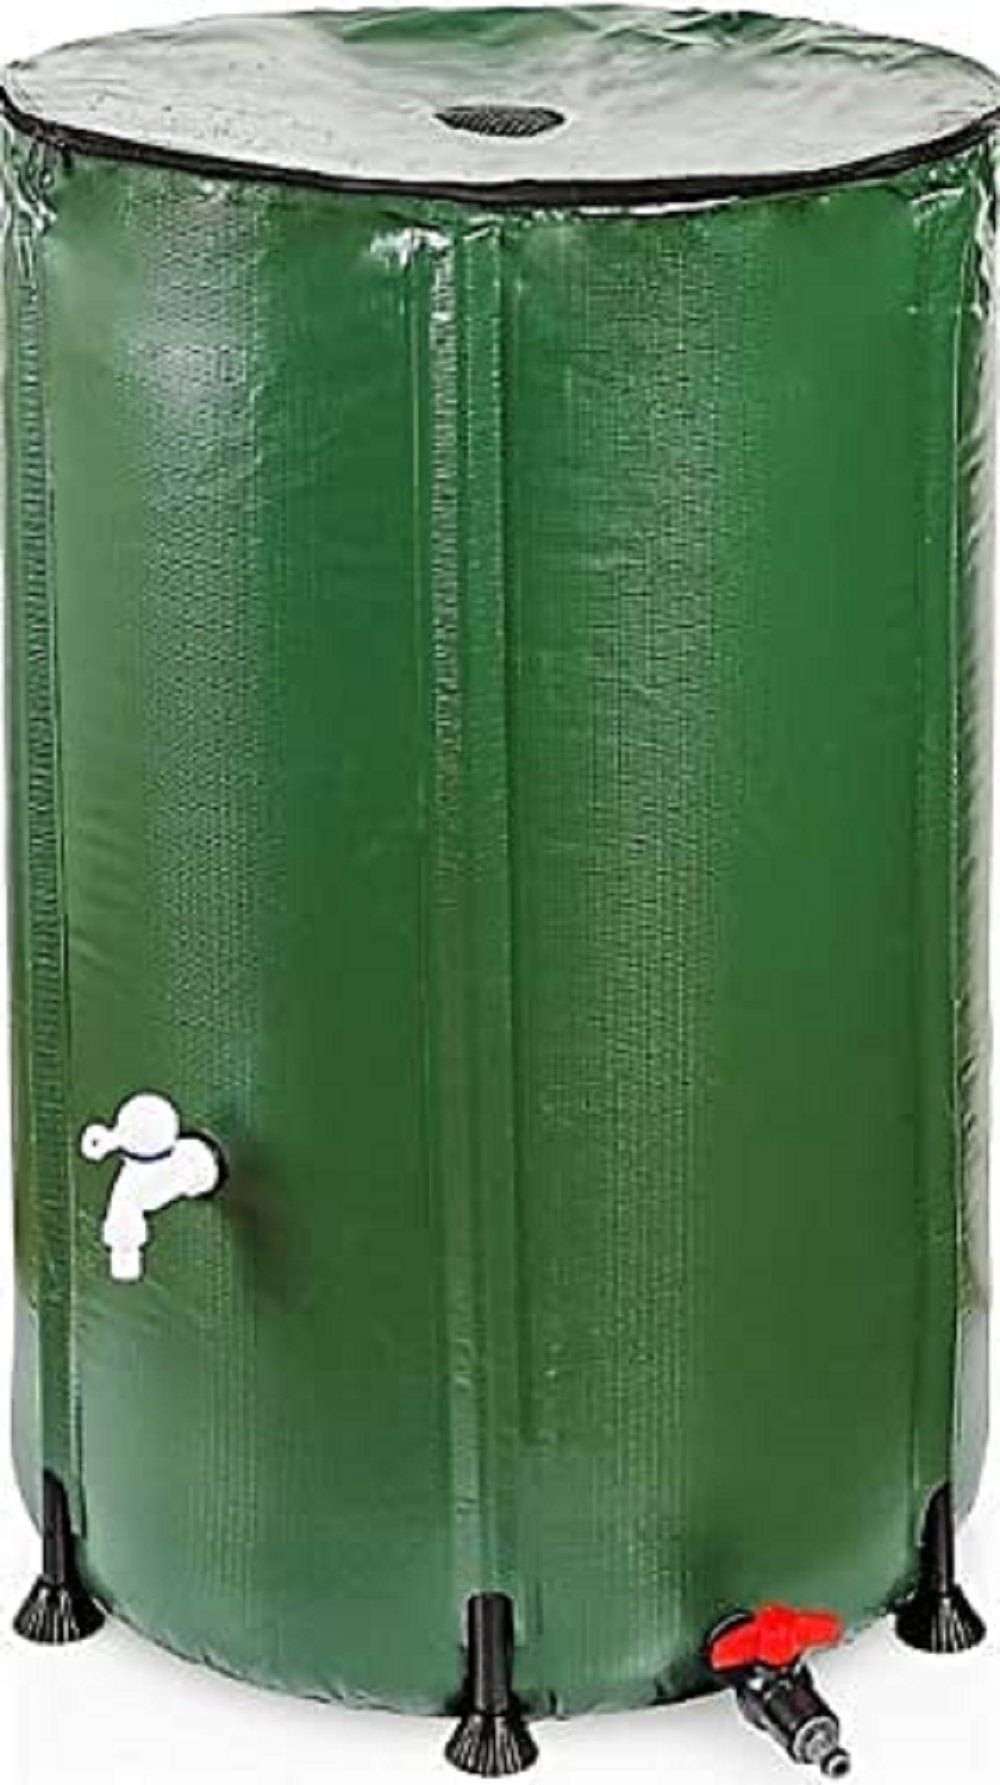 RENATA Faltbare grüne Regentonne aus UV-stabilem PVC, 380 Liter Volumen, inkl. Filter & Schlauchschnelladapter, Tonne, Regentonne, Mehrzweckfass, Kunststoffbehälter, Wassertank